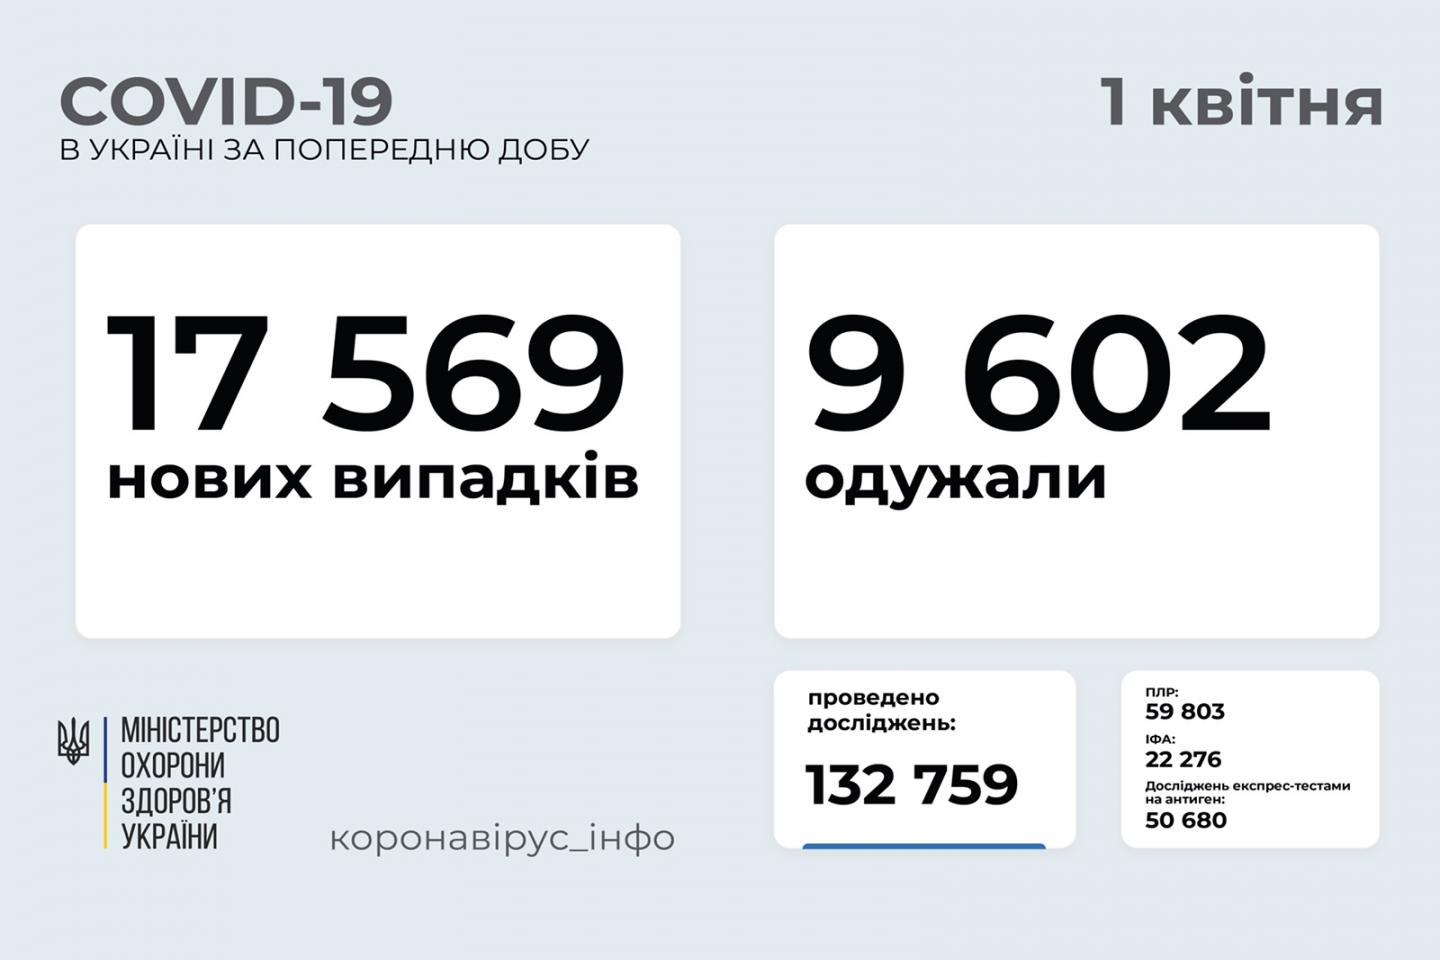 http://dunrada.gov.ua/uploadfile/archive_news/2021/04/01/2021-04-01_5186/images/images-65789.jpg